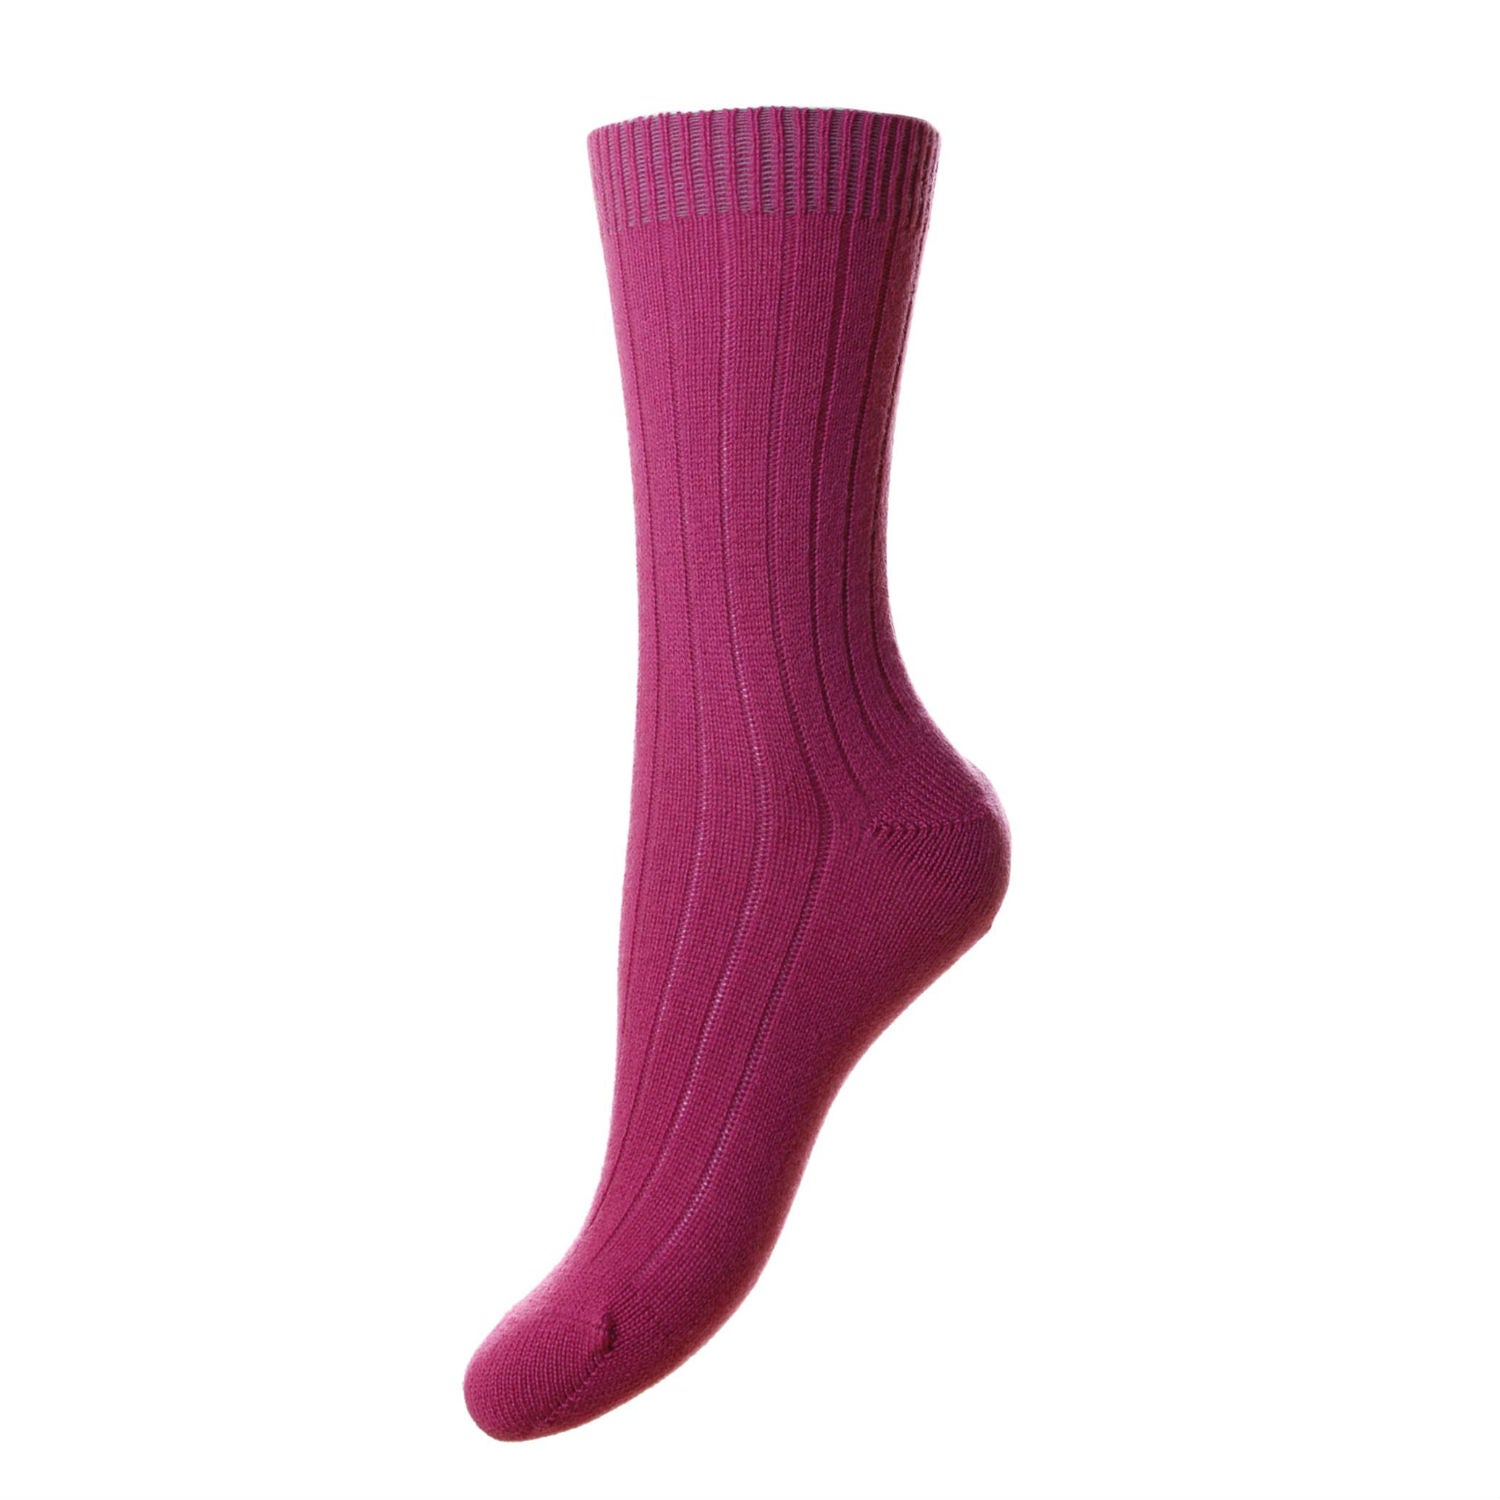 Pantherella women's socks - cashmere - damson pink